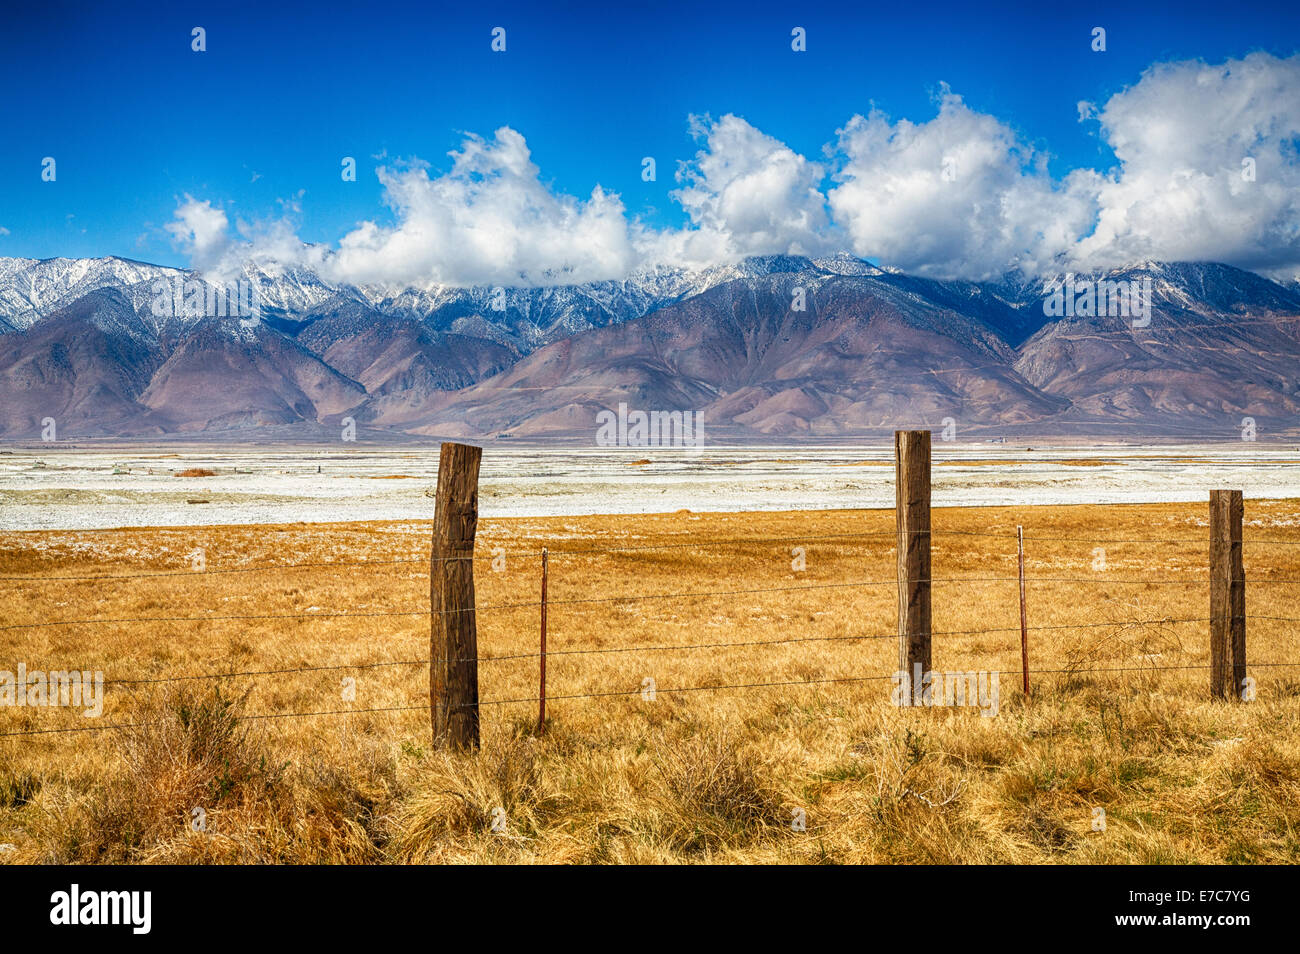 Los campos de una antigua granja al pie oriental de la cordillera de Sierra Nevada. California, EE.UU. Foto de stock